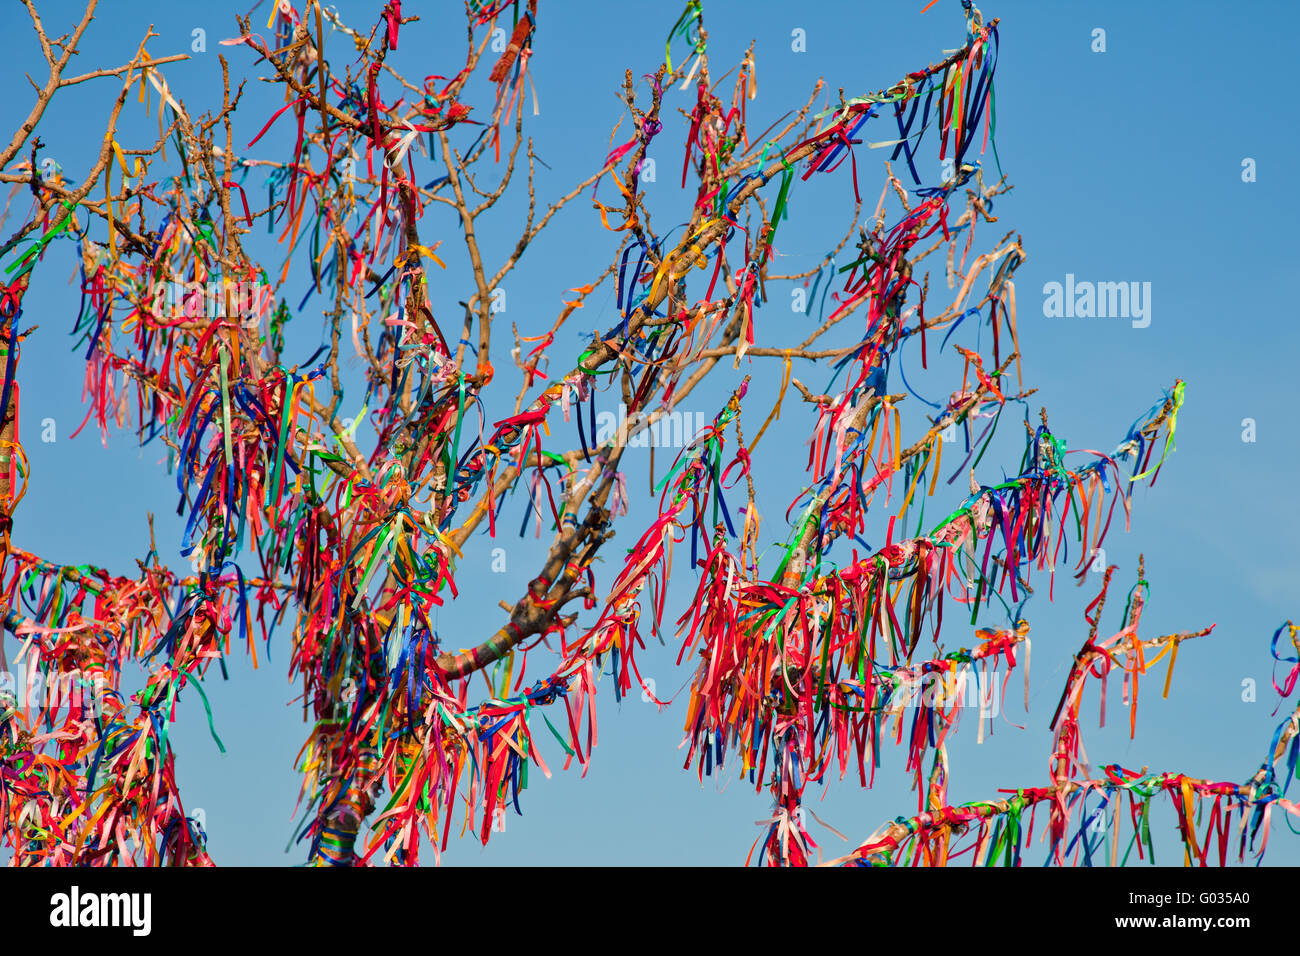 Tiens arbre branches attachées avec des rubans colorés Banque D'Images